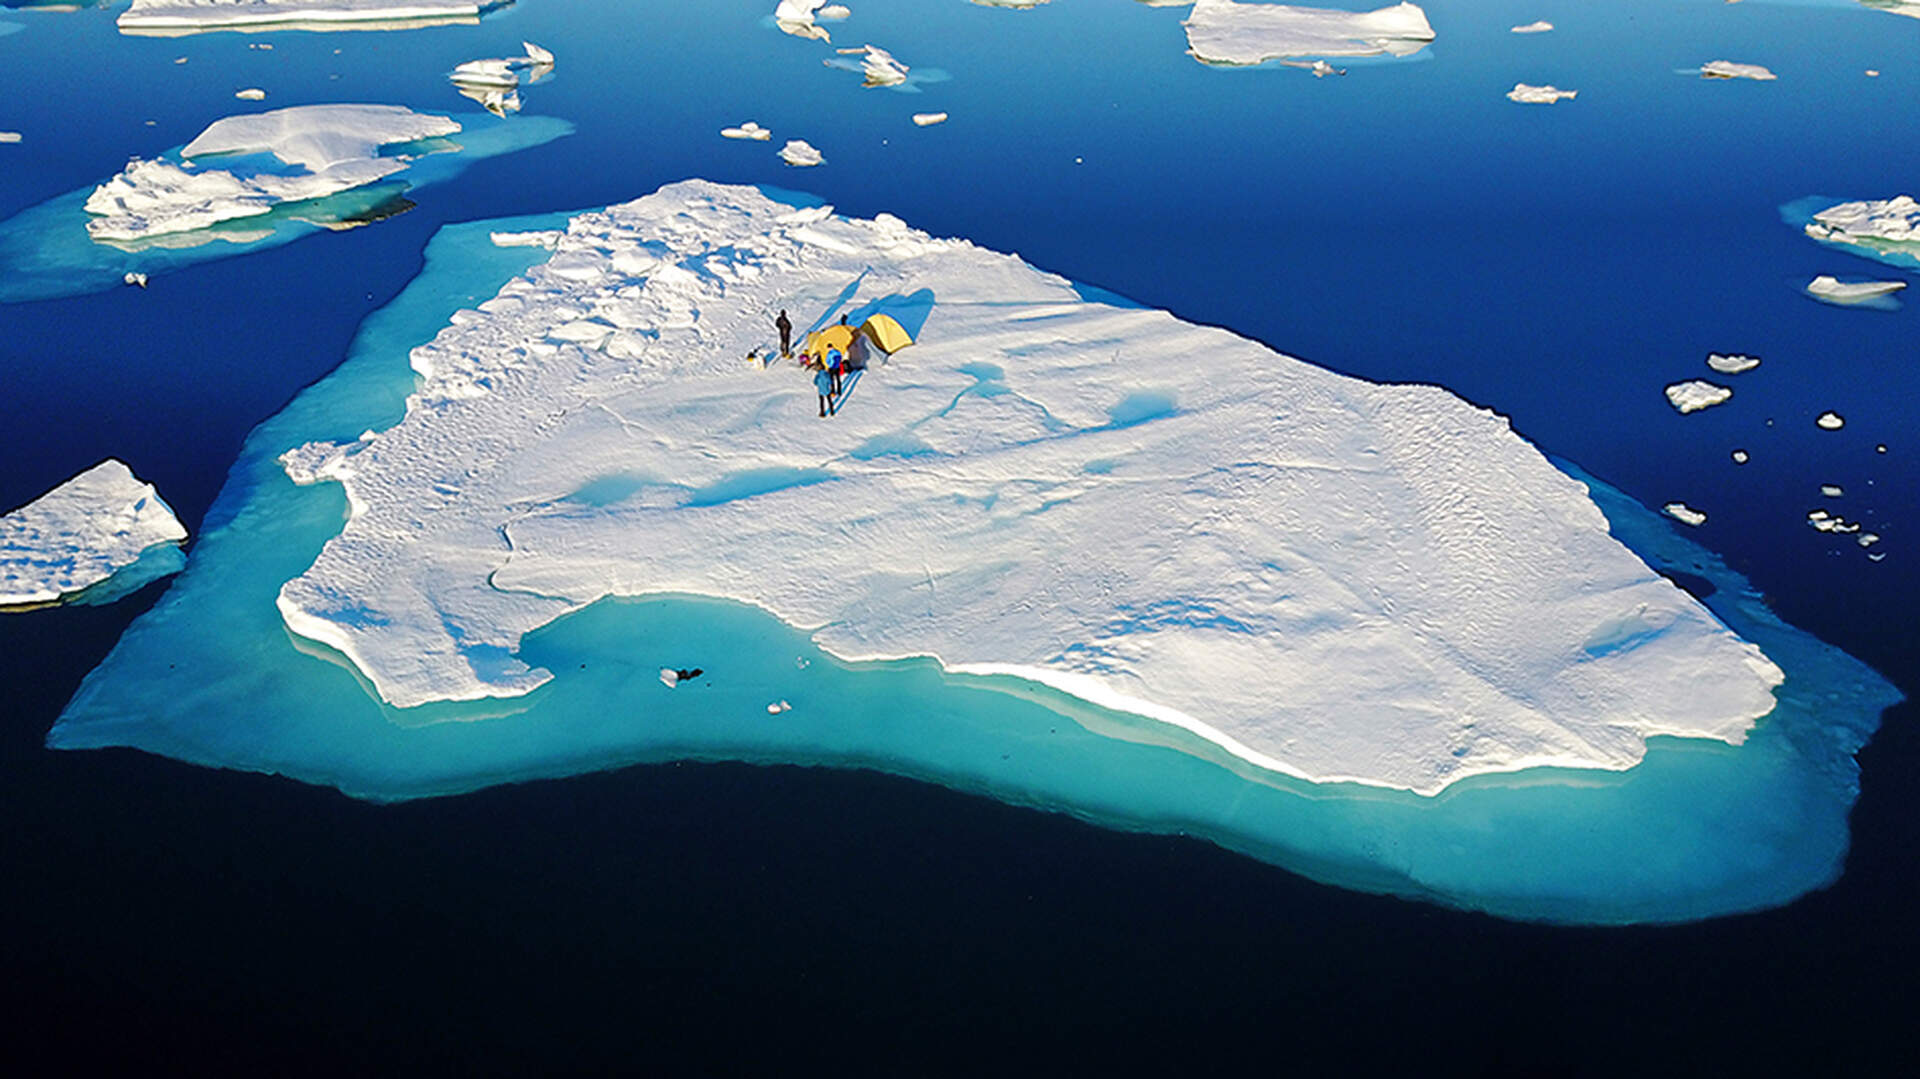 Abenteuer Grönland (Live Reportage) - Szenenbild 1 von 4